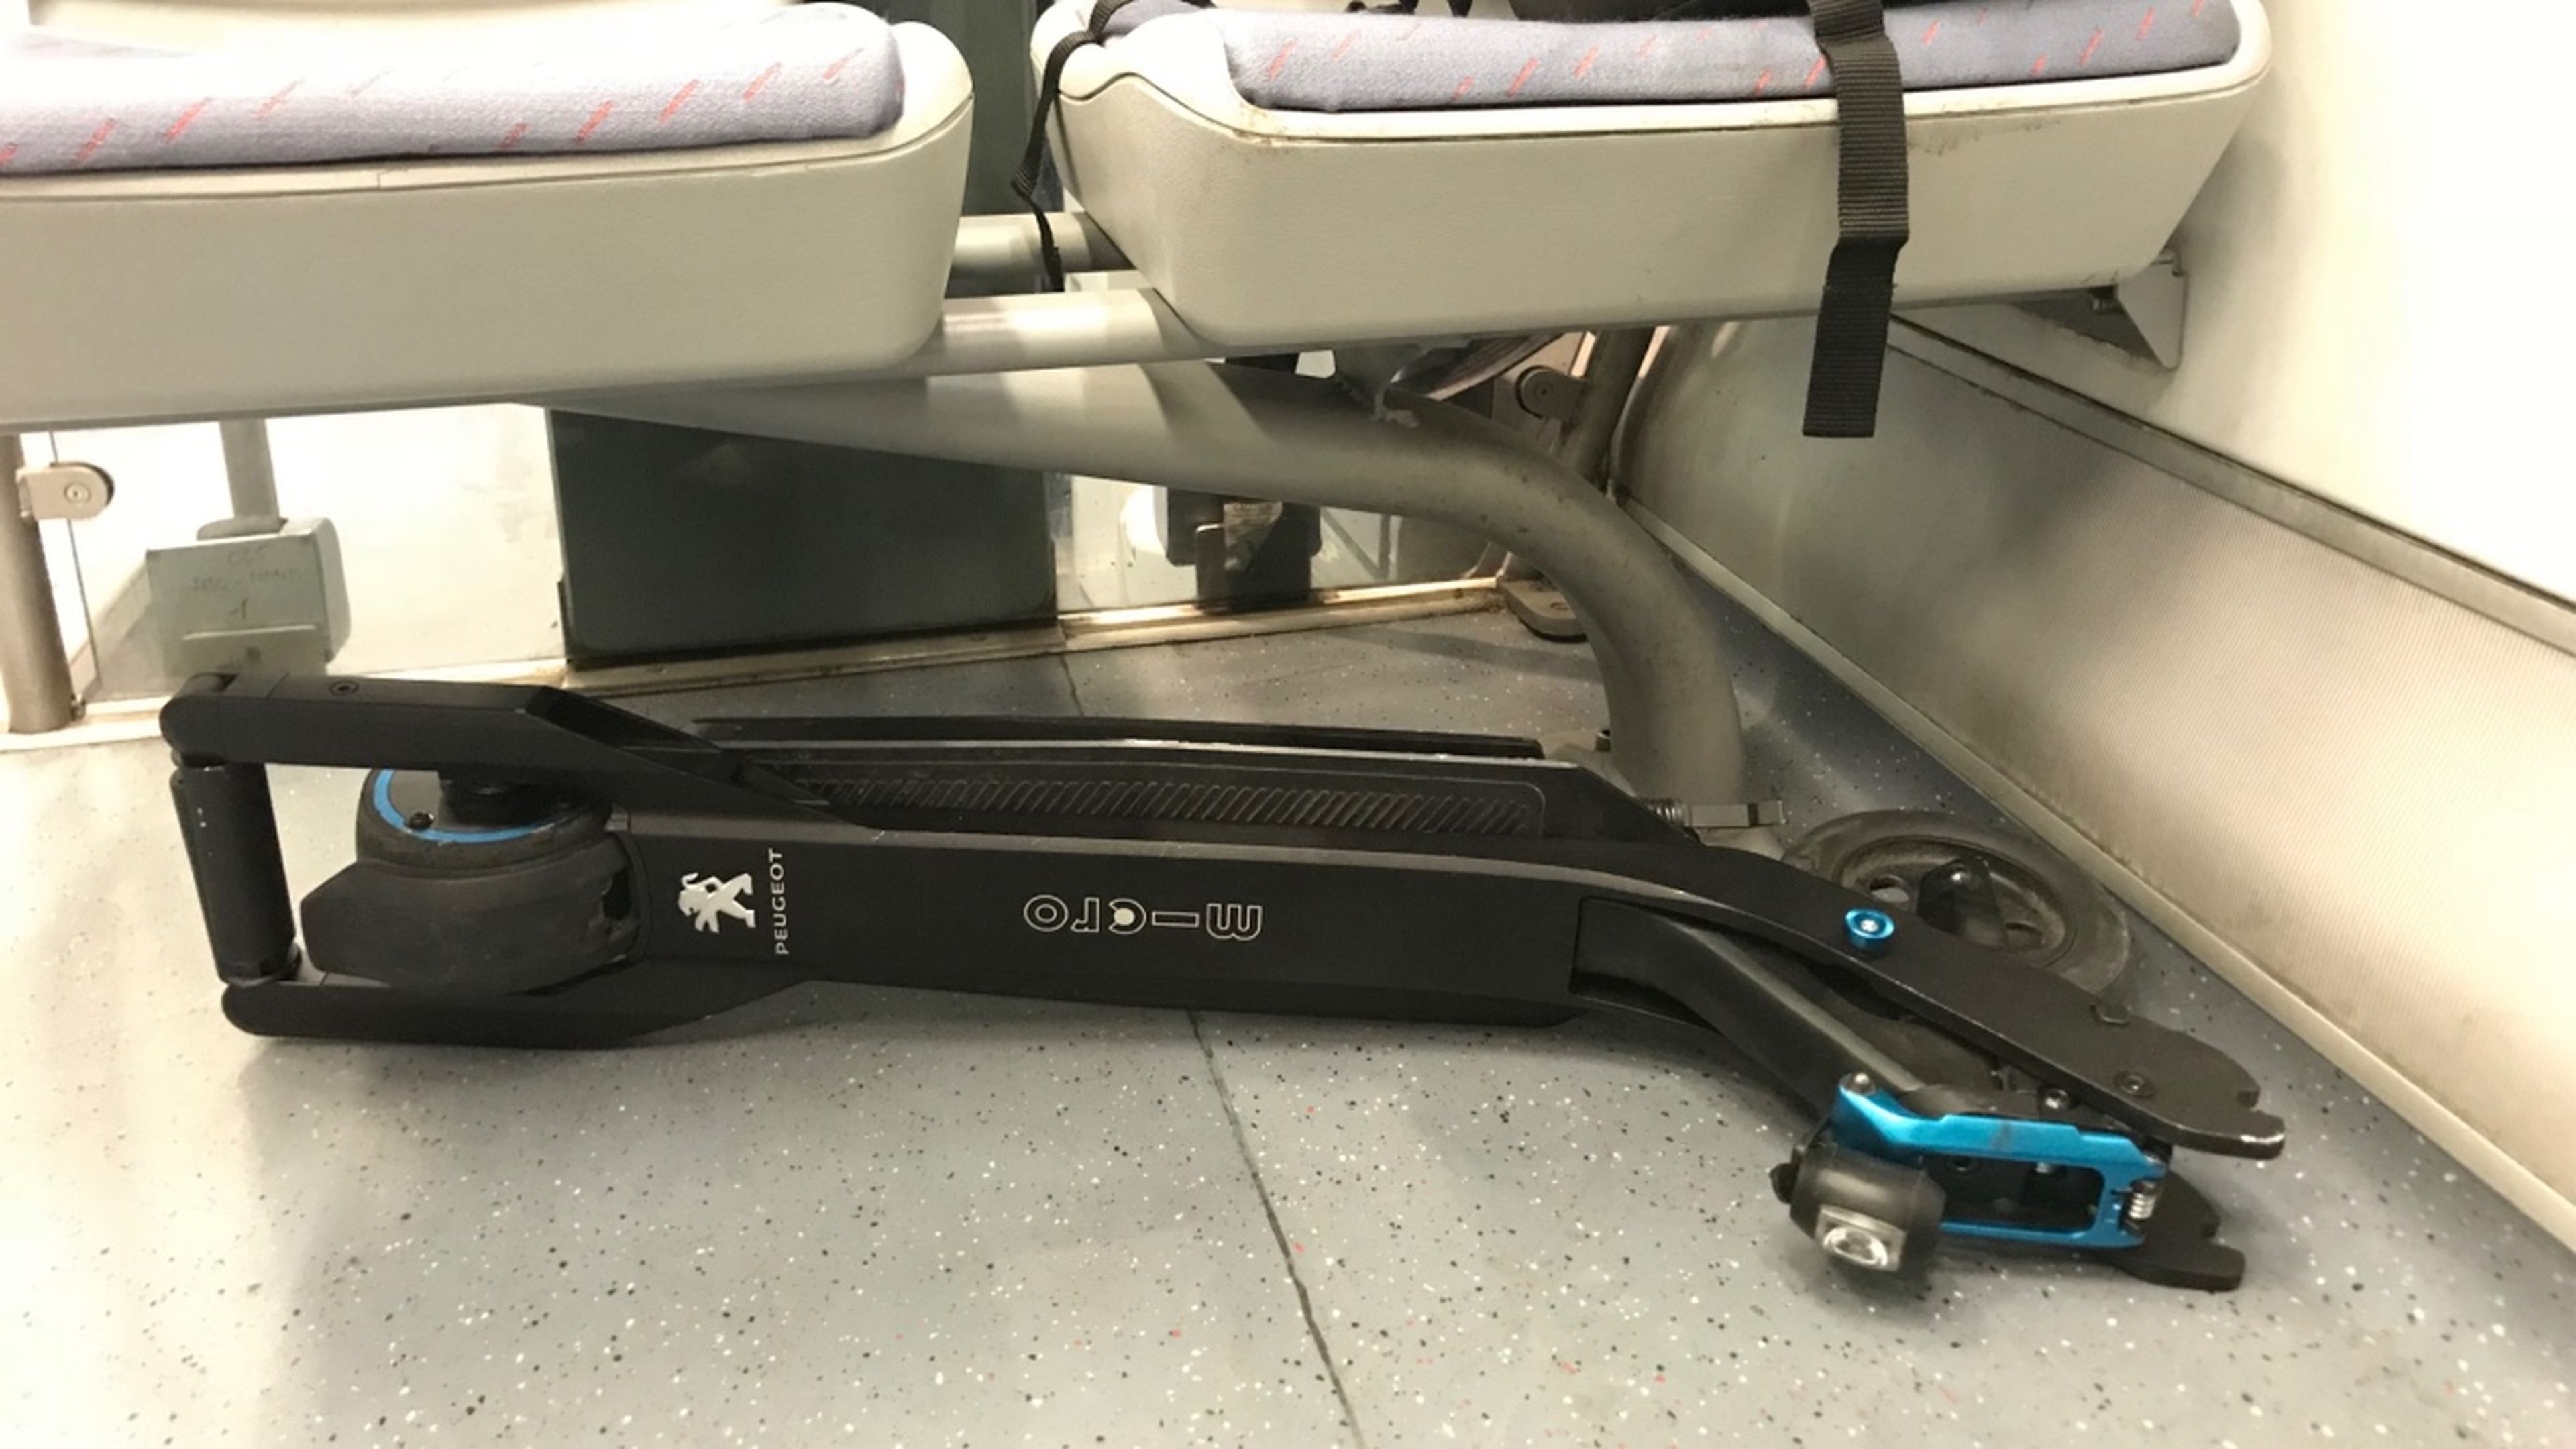 Al plegarse, el patín eléctrico cabe a la perfección en el maletero de cualquier coche o bajo los asientos del transporte público.